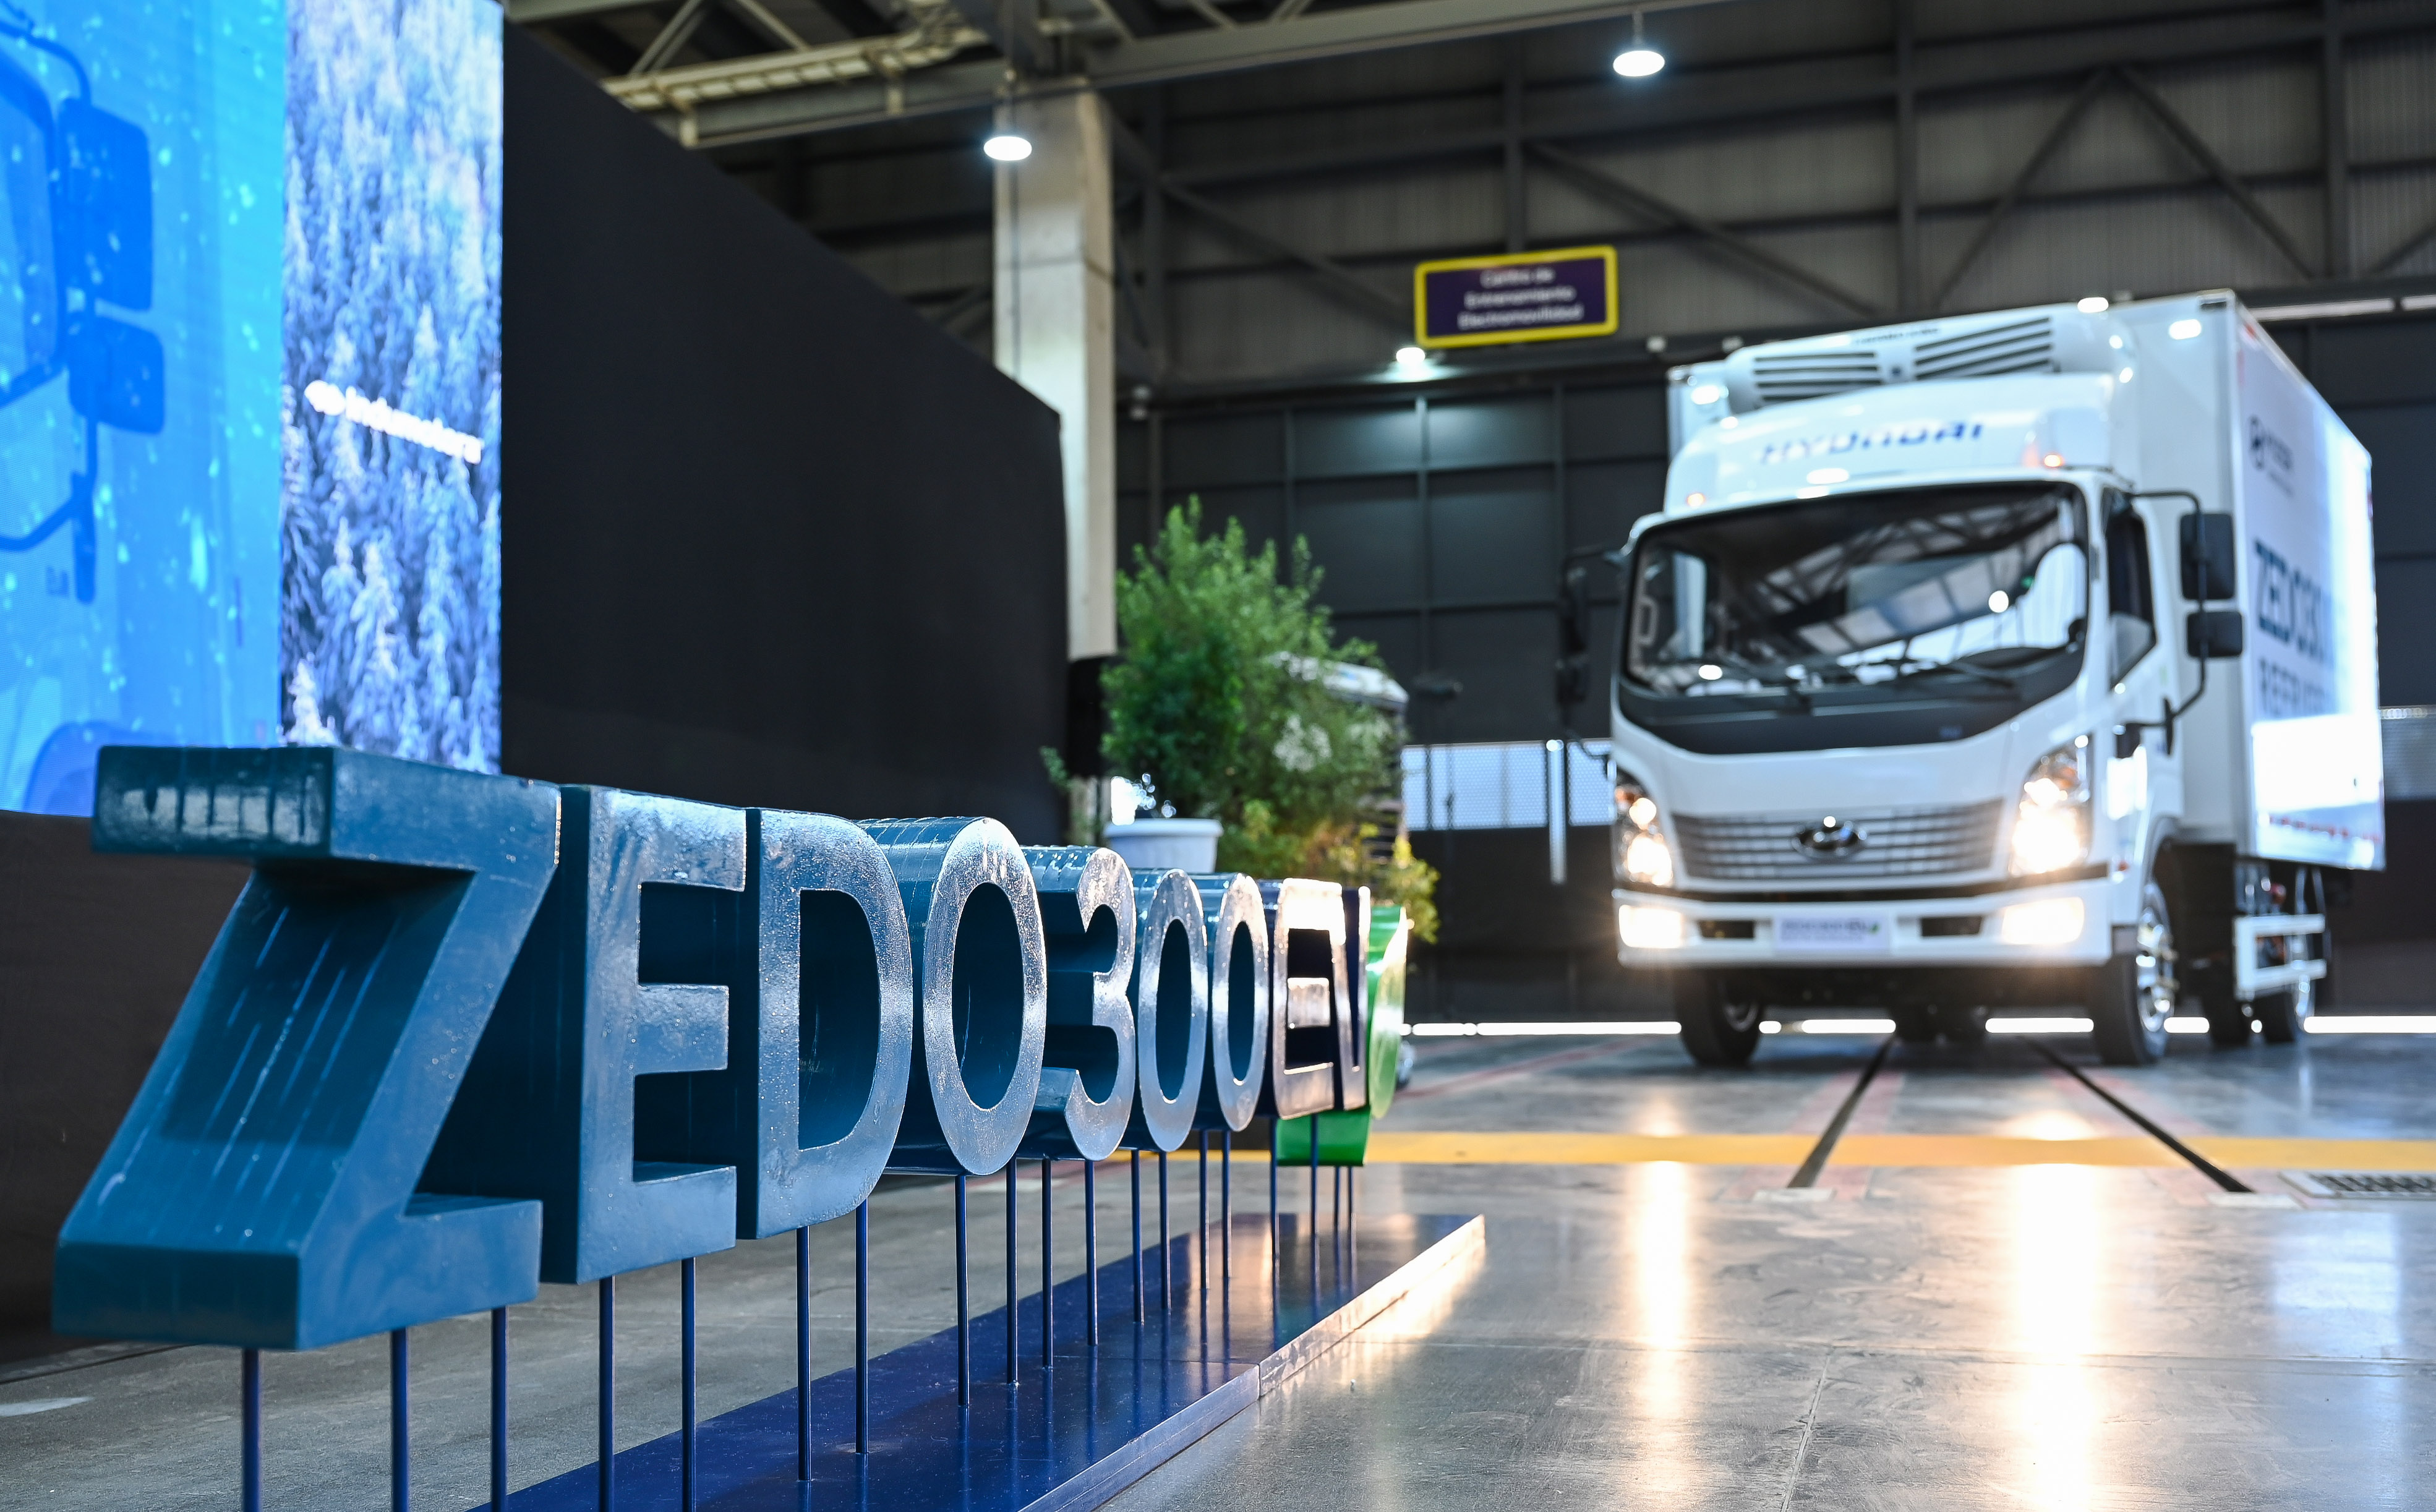 Hyundai trae el primer camión eléctrico refrigerado a Chile